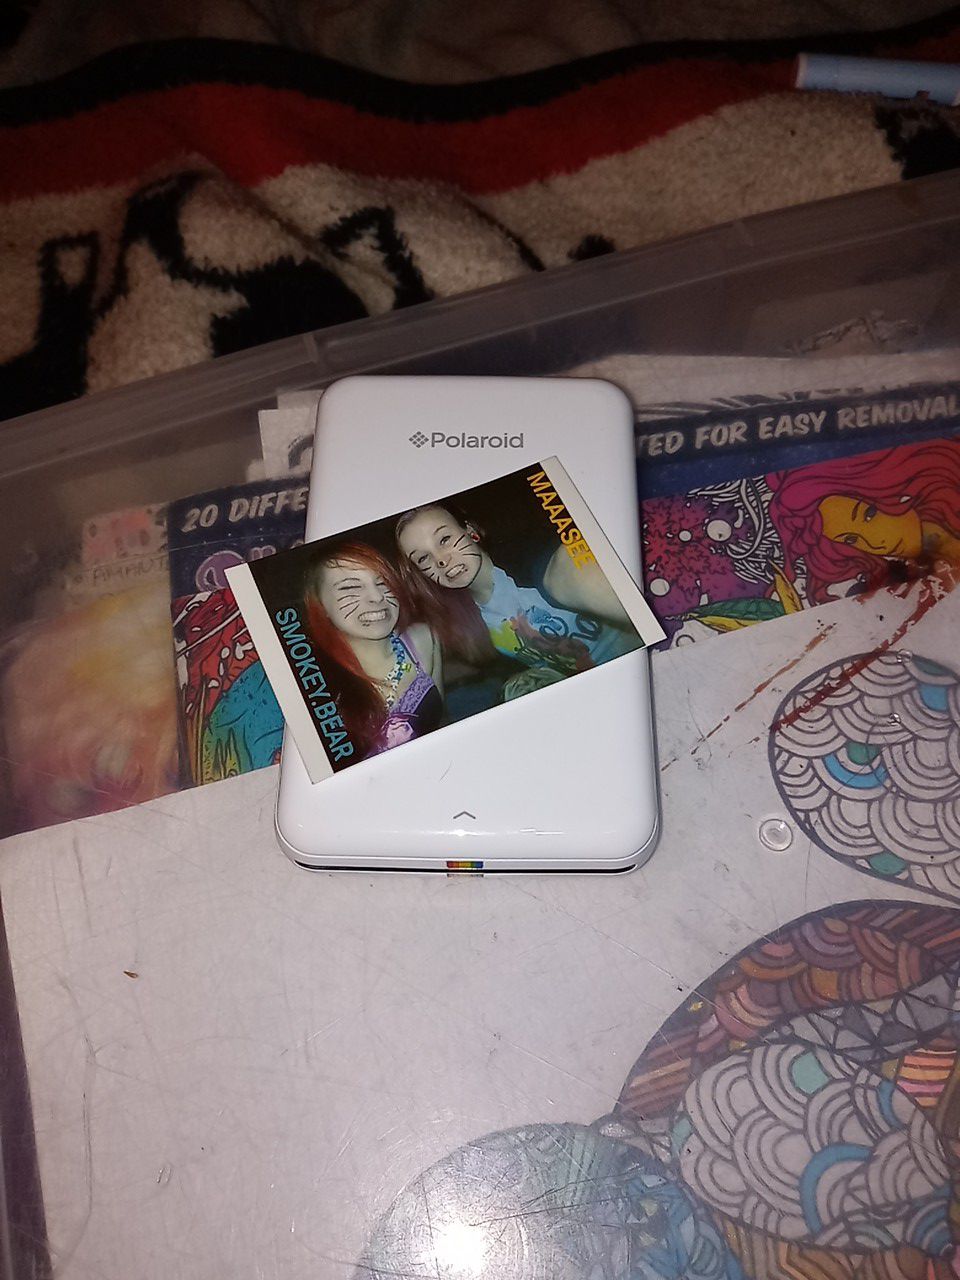 Portable Polaroid Printer - Super Small and Super Cute!